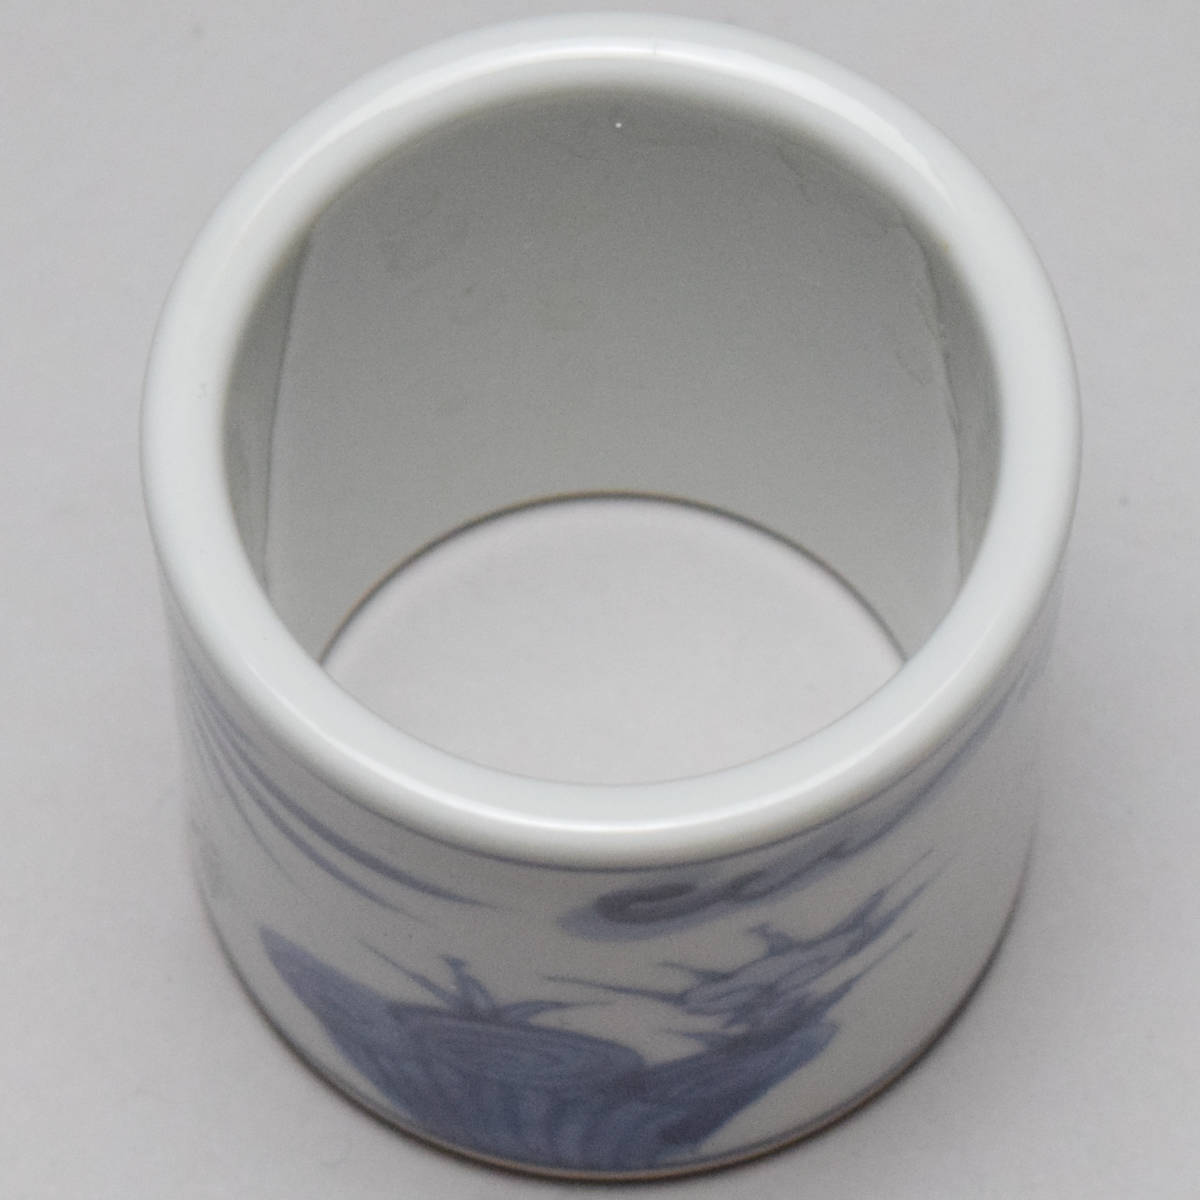 [...].... белый фарфор с синим рисунком цветы и птицы документ крышка .* вместе коробка чайная посуда [b-025]